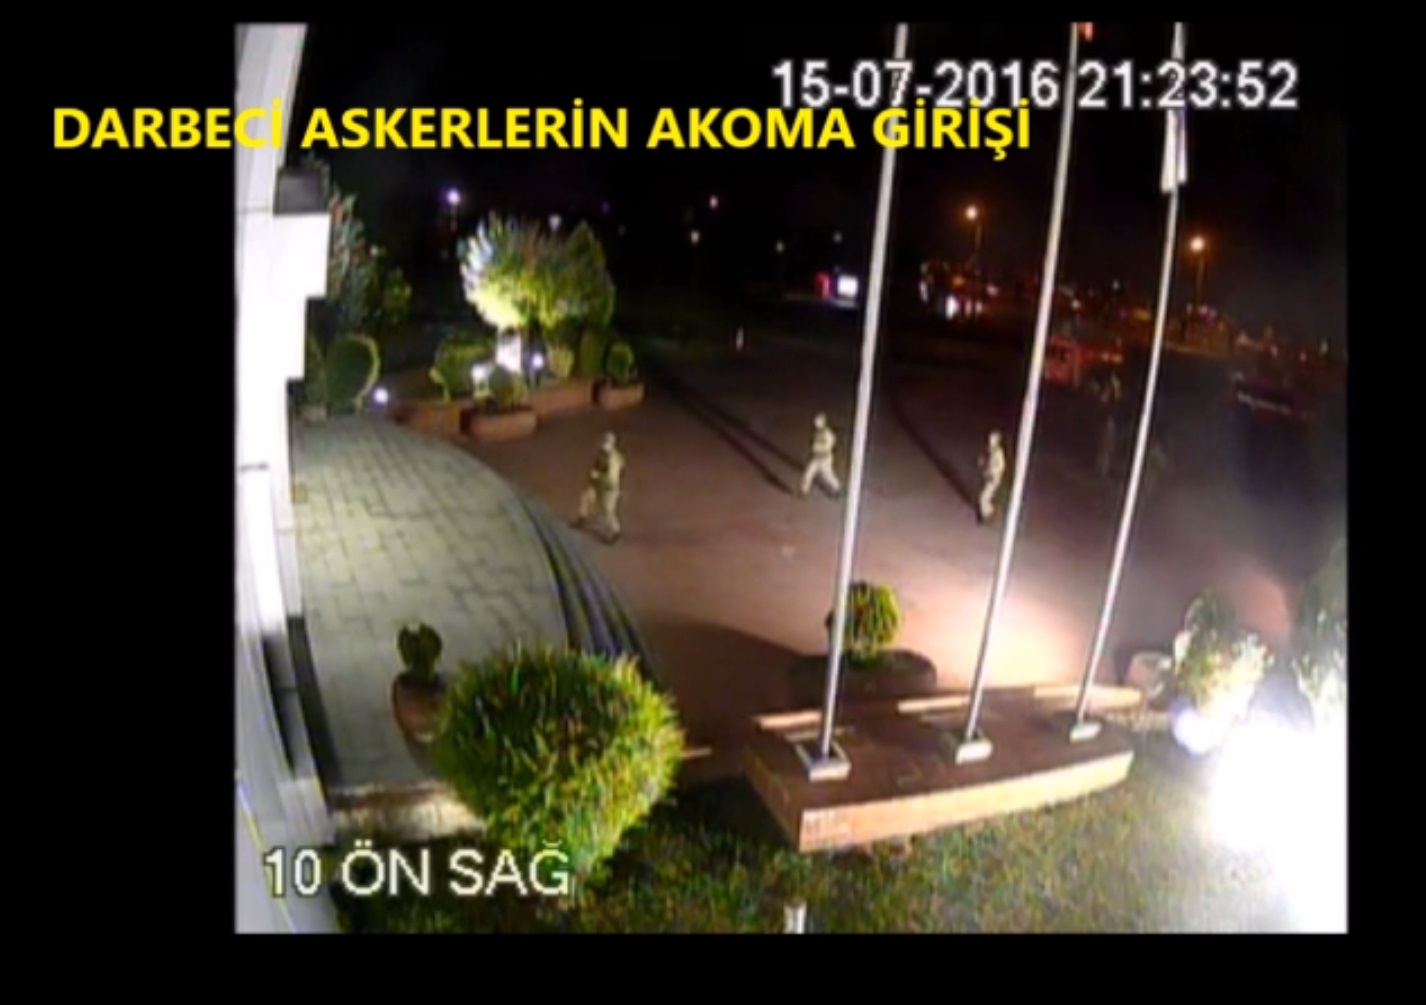 AKOM'da İstanbul'un dört bir yanı mobese kameraları ile izlenebildiği için darbeci hainler tarafından hedef alındı.